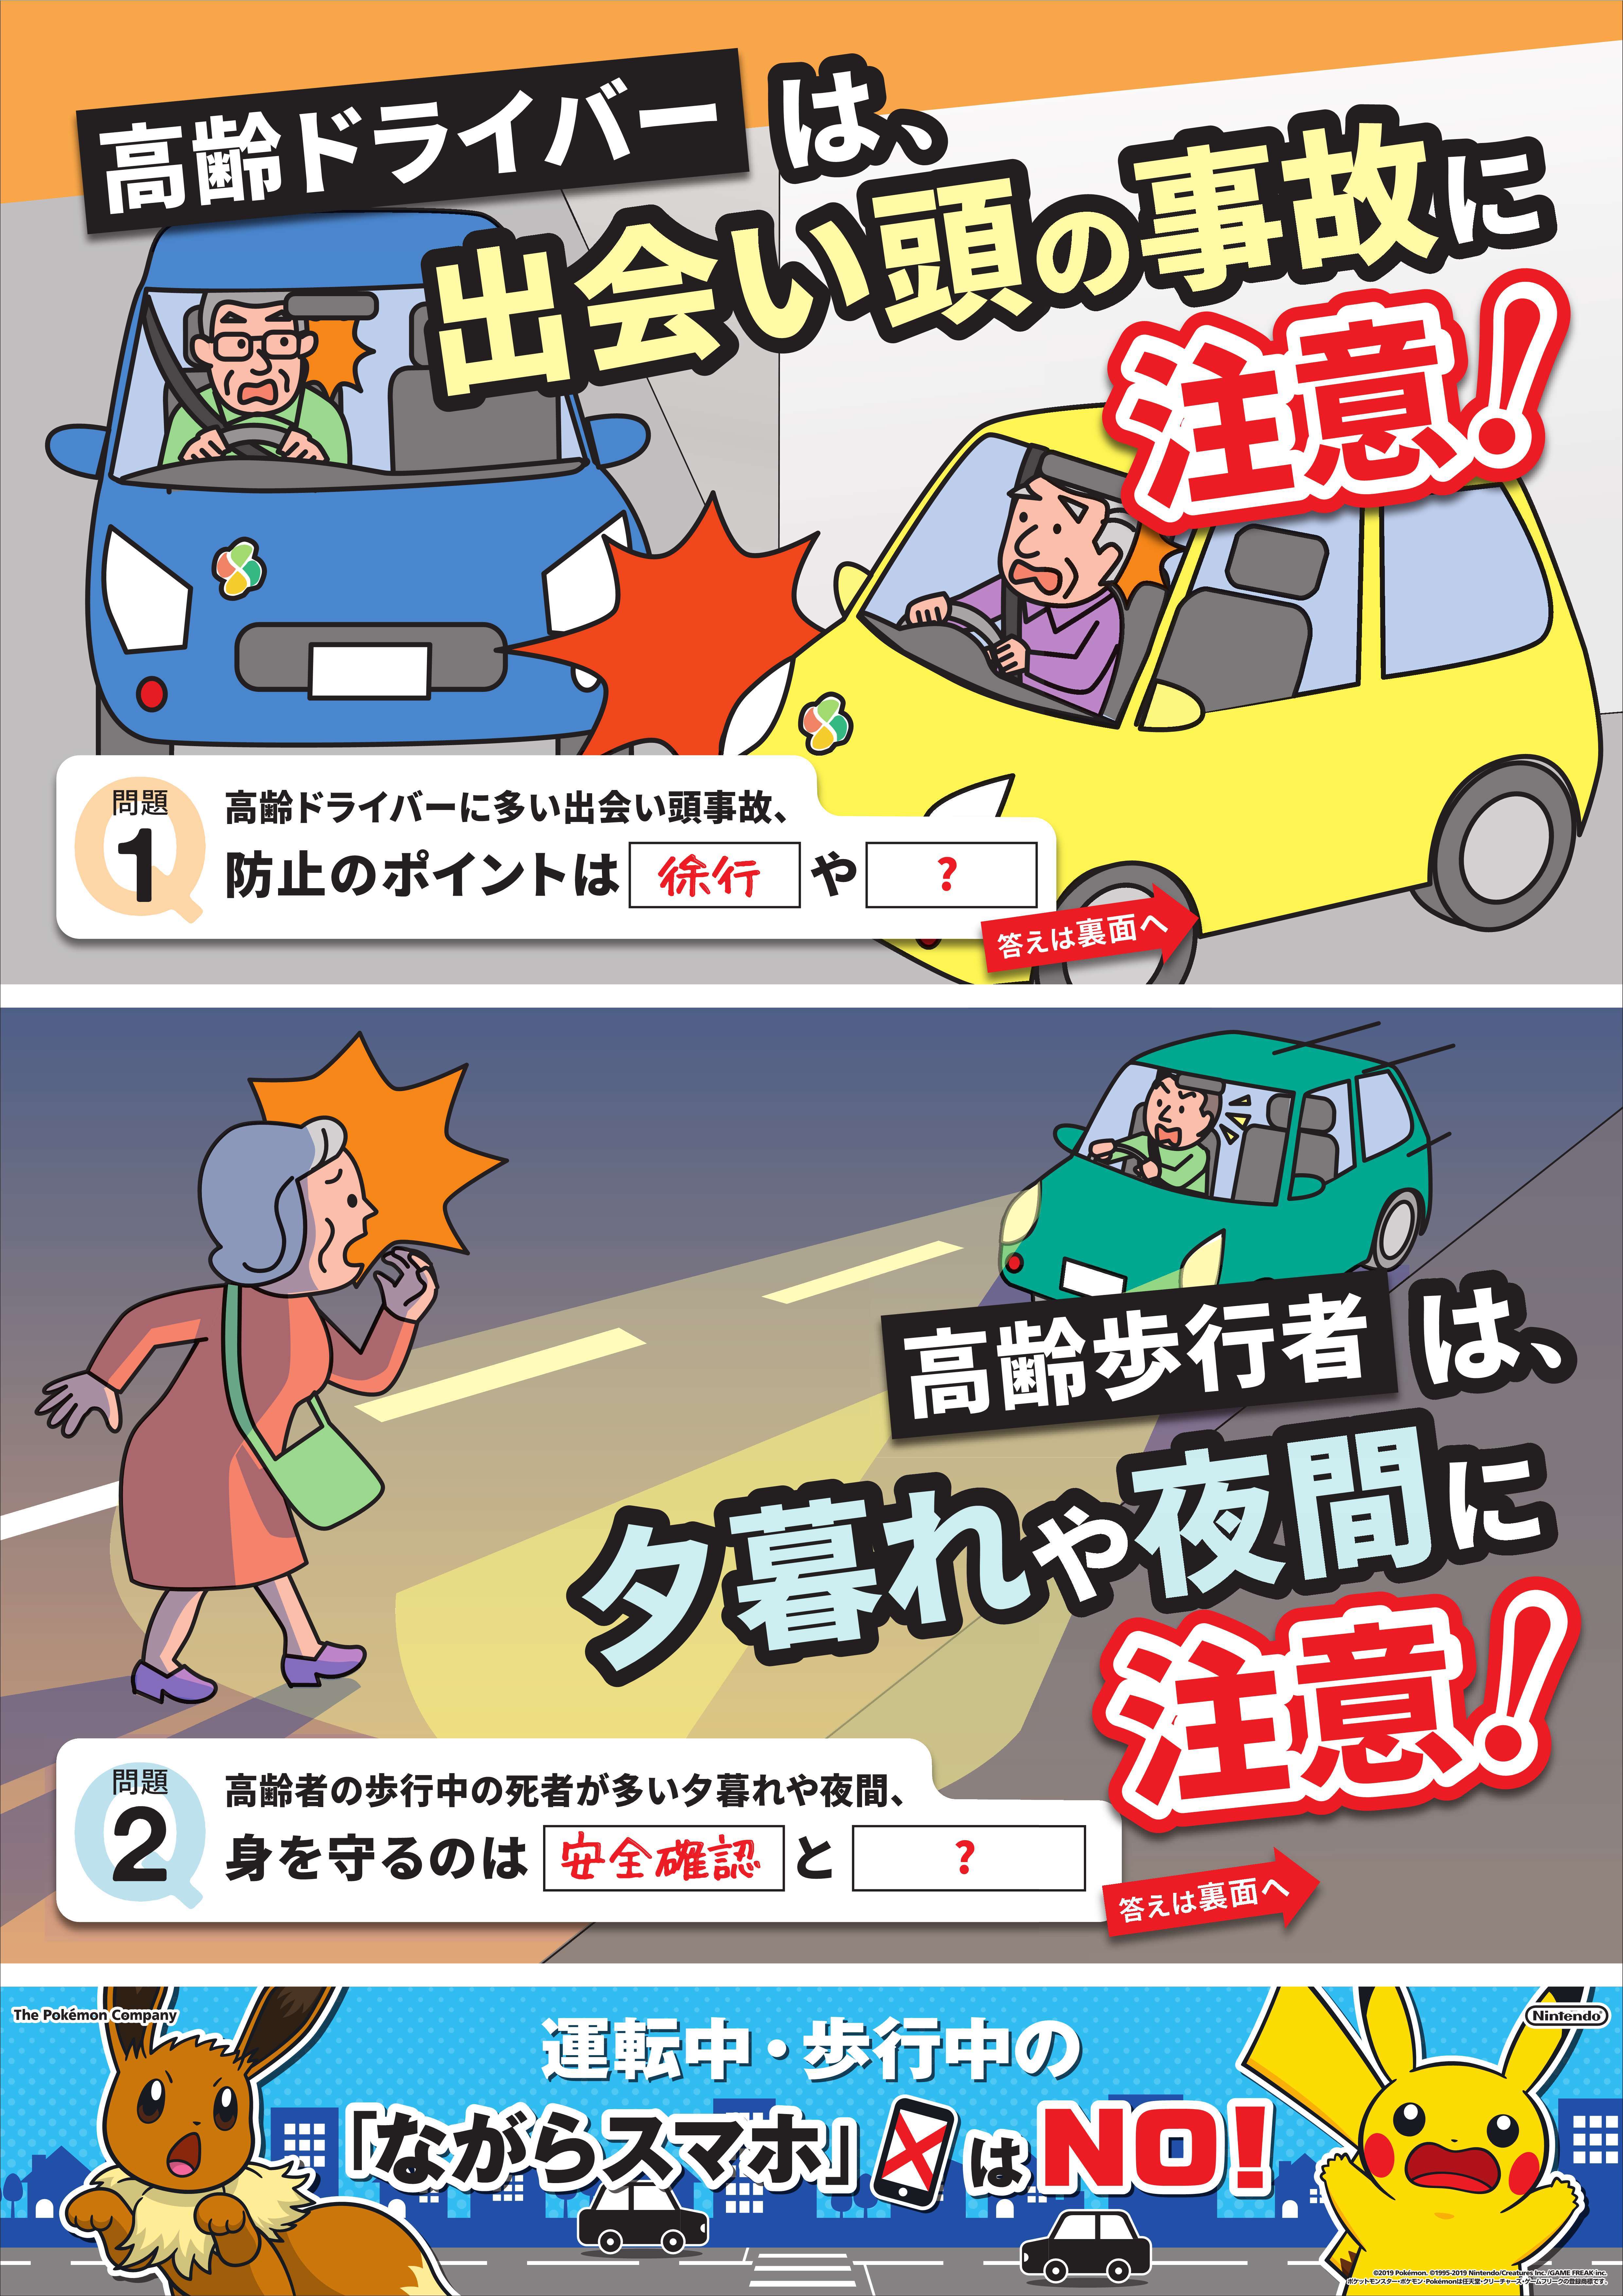 ピカチュウ反射リストバンド を作成 高齢歩行者を夕暮れ 夜間の交通事故から守る 一般社団法人 日本損害保険協会のプレスリリース